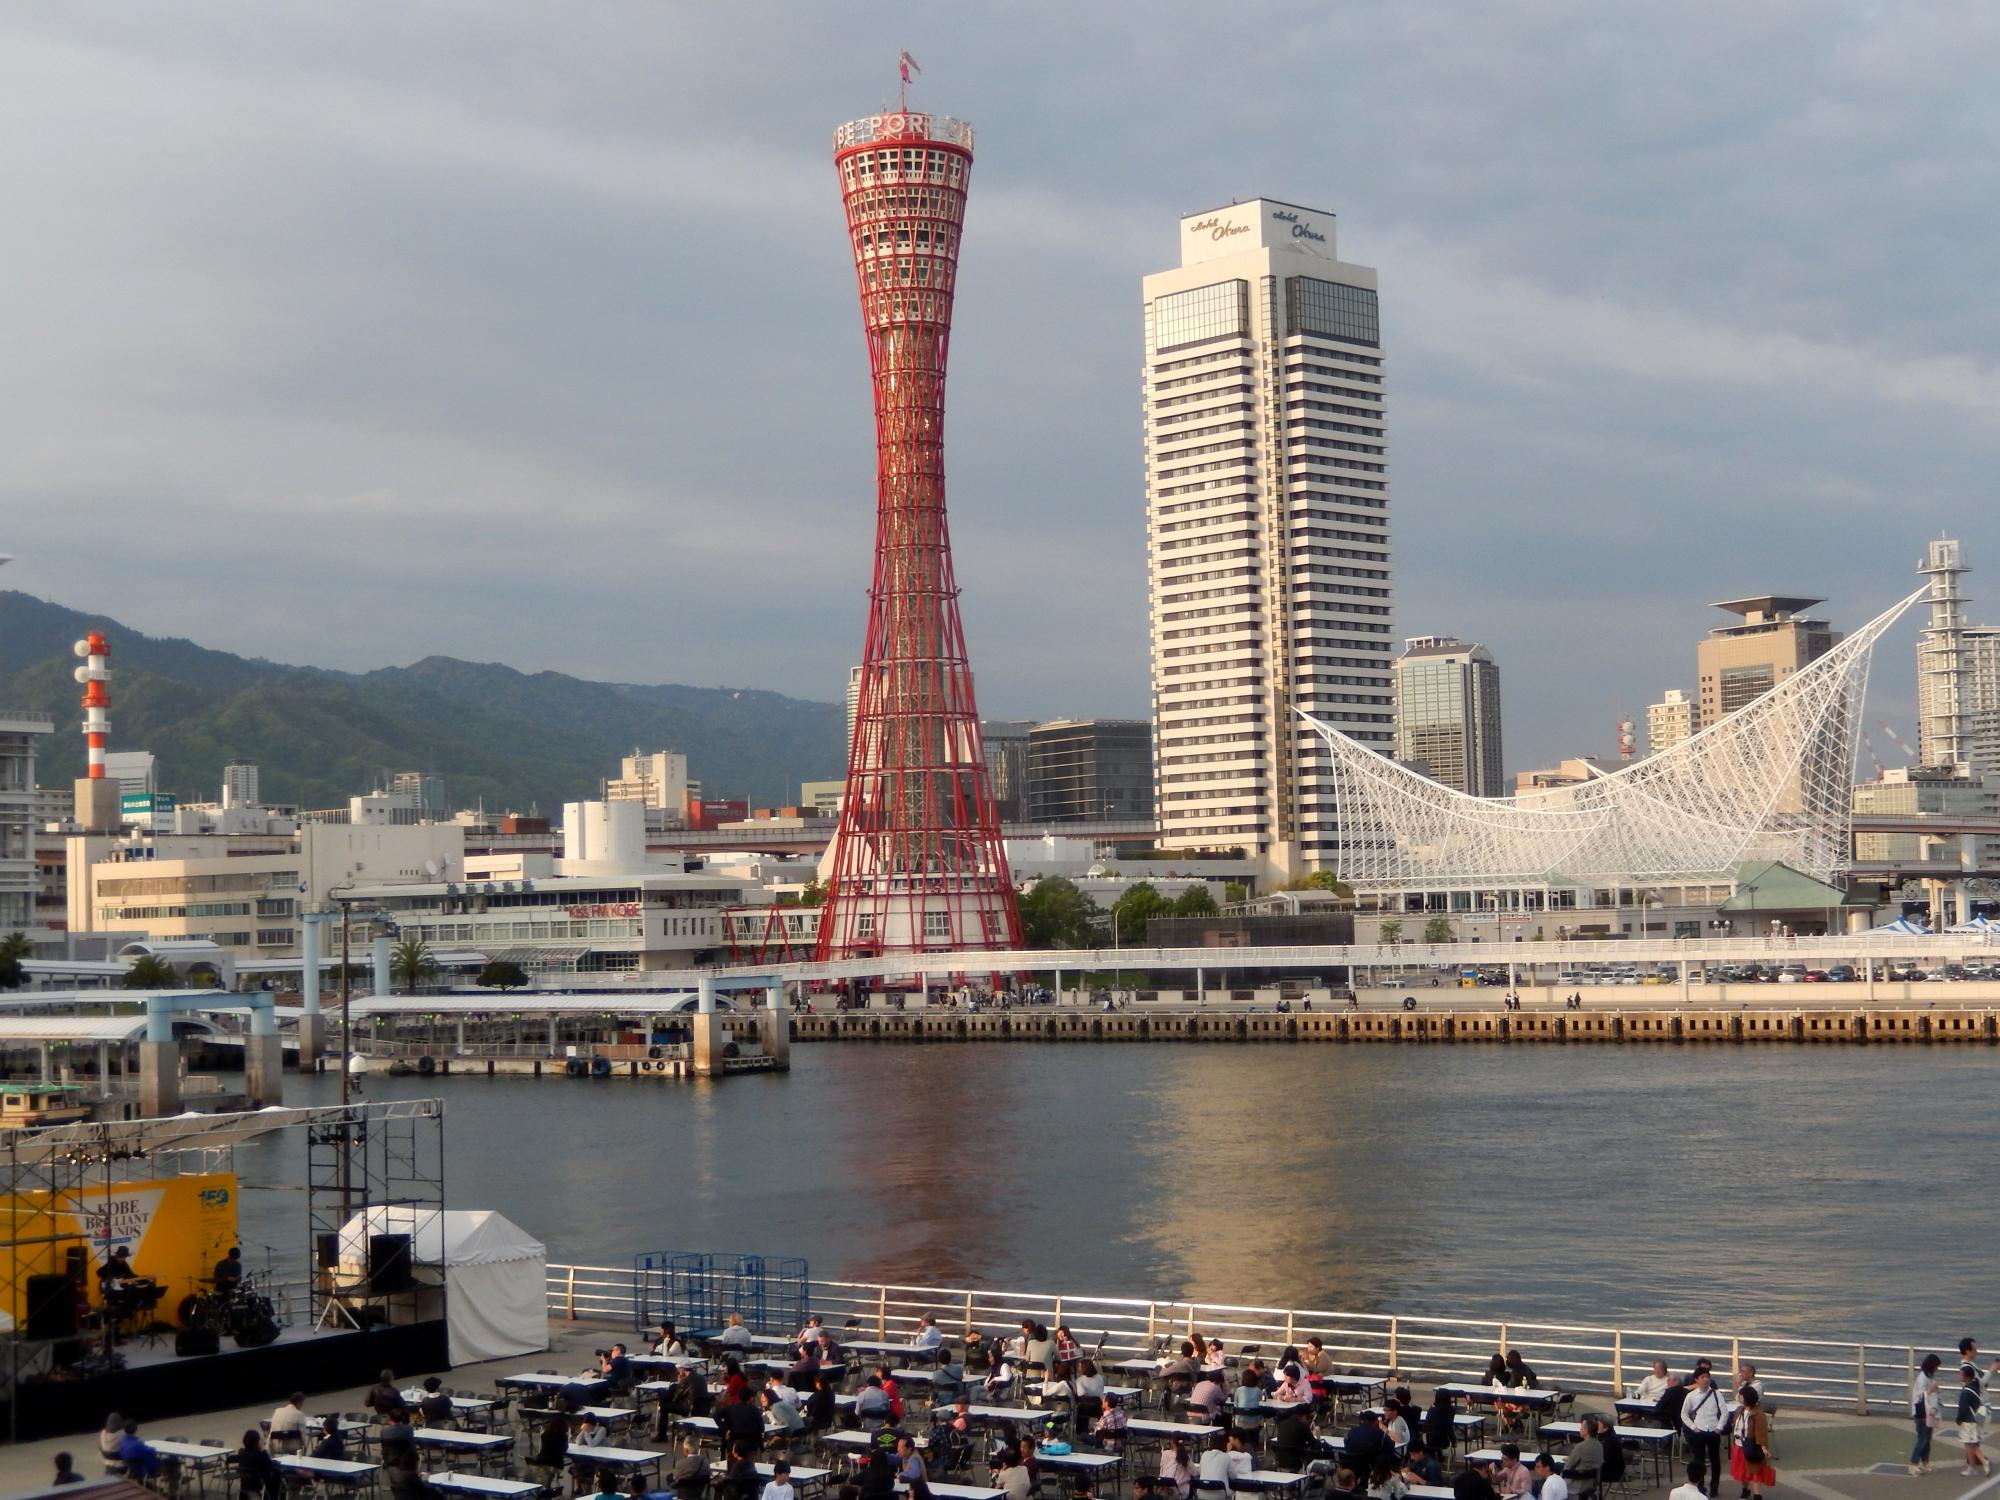 Japan (2017) - Kobe Port Tower #1